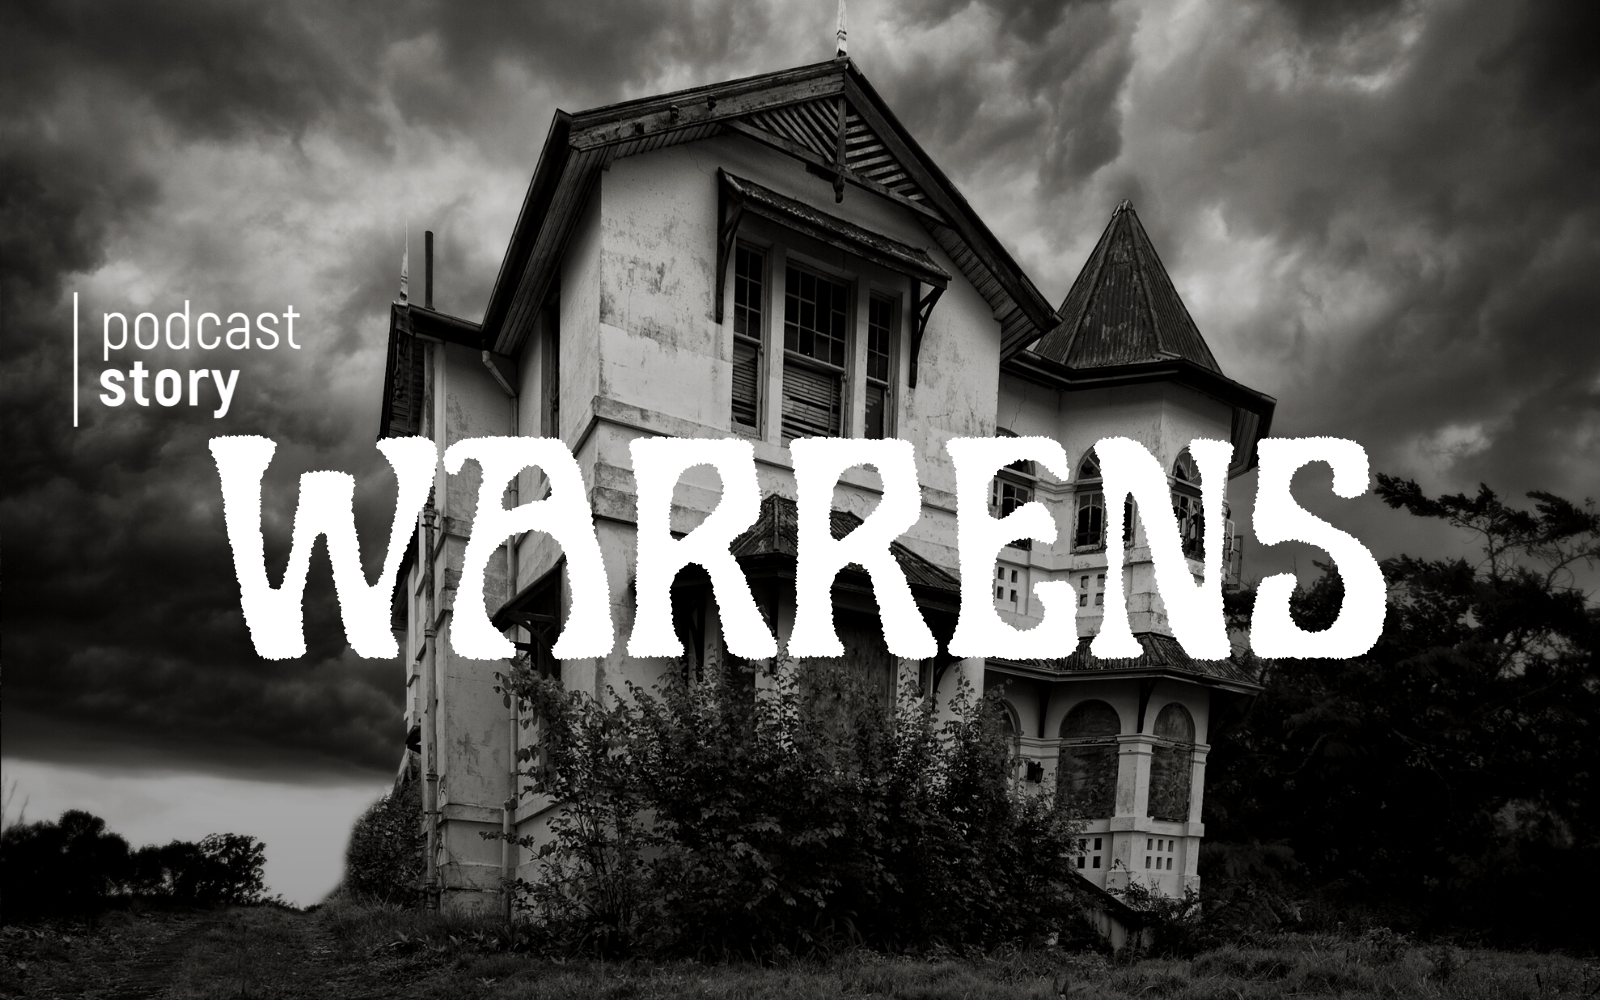 Les Warrens, démons de l’arnaque